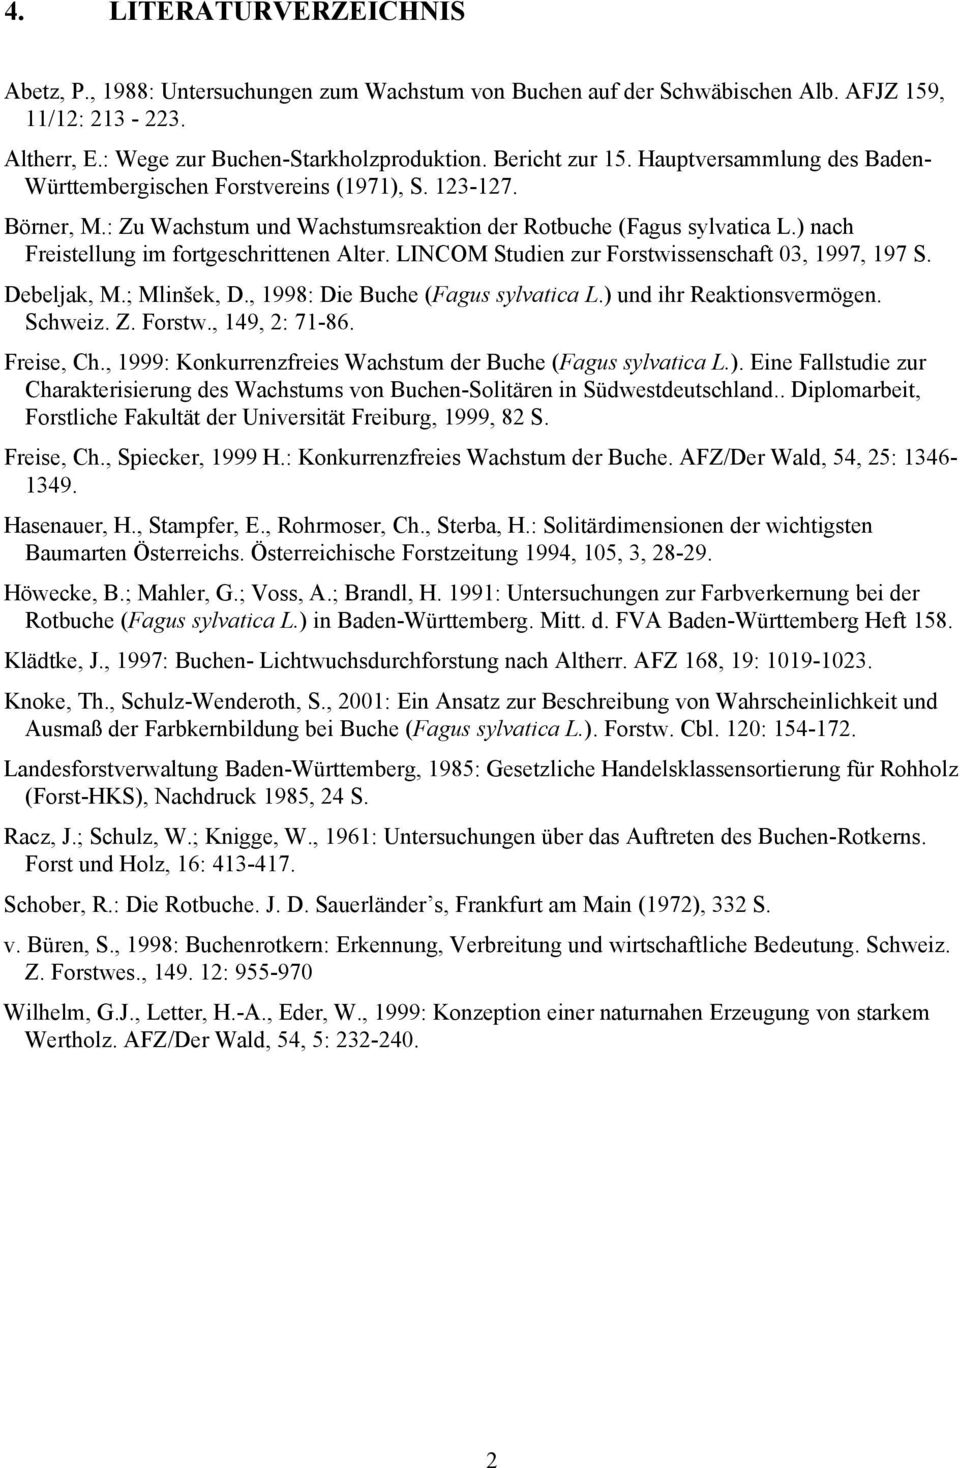 ) nach Freistellung im fortgeschrittenen Alter. LINCOM Studien zur Forstwissenschaft 03, 1997, 197 S. Debeljak, M.; Mlinšek, D., 1998: Die Buche (Fagus sylvatica L.) und ihr Reaktionsvermögen.